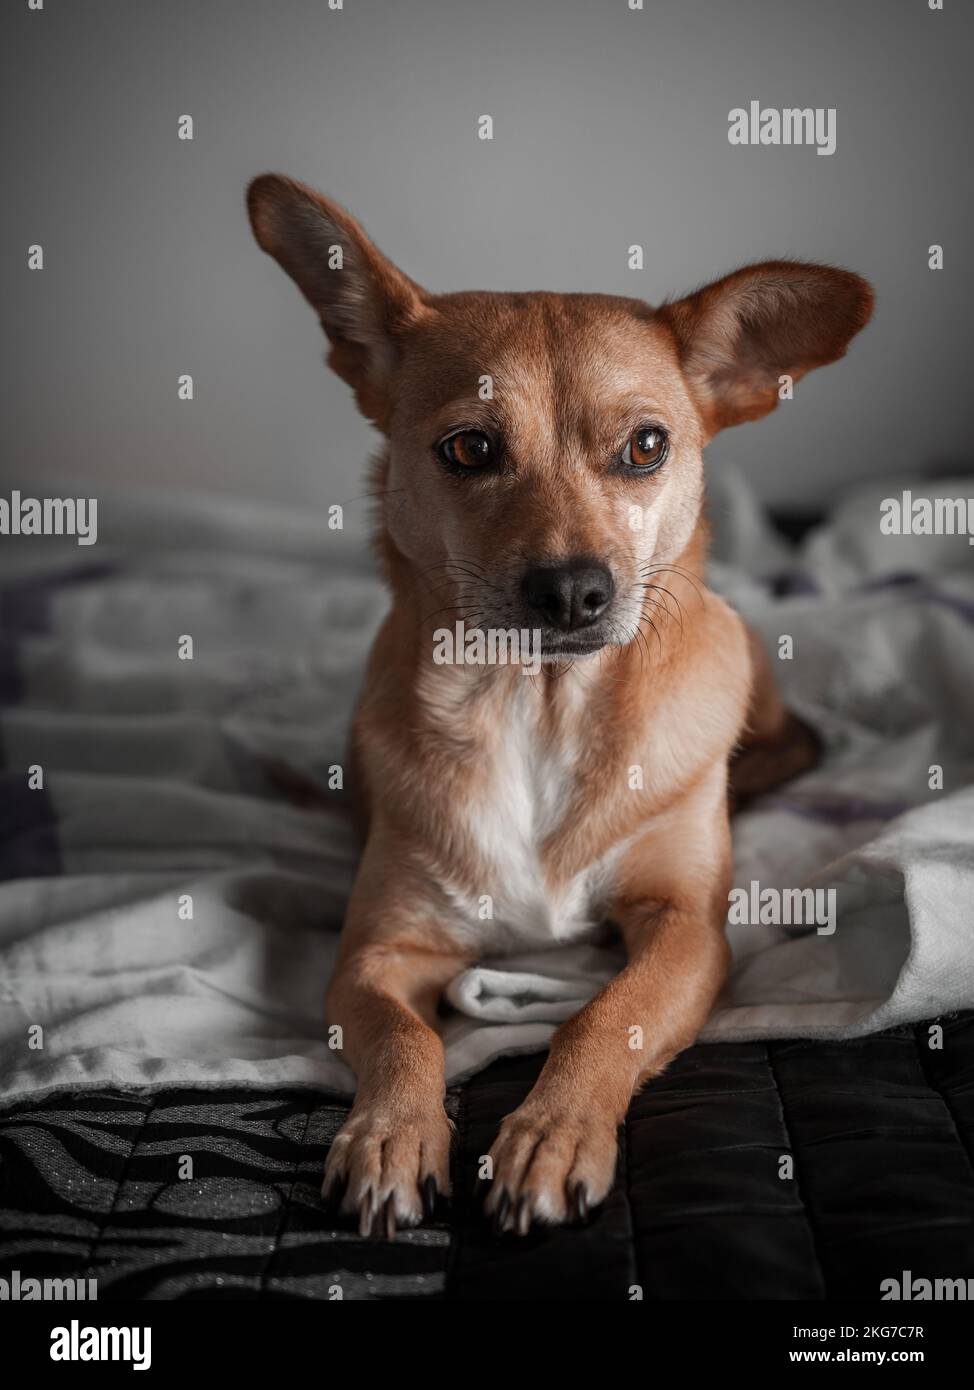 Porträt eines süßen Mischhundes, der in einer entspannten Haltung auf dem menschlichen Bett sitzt und ein Ohr nach oben zeigt, mit weichem Sonnenlicht, das aus dem Fenster kommt. Haustiere zu Hause Stockfoto